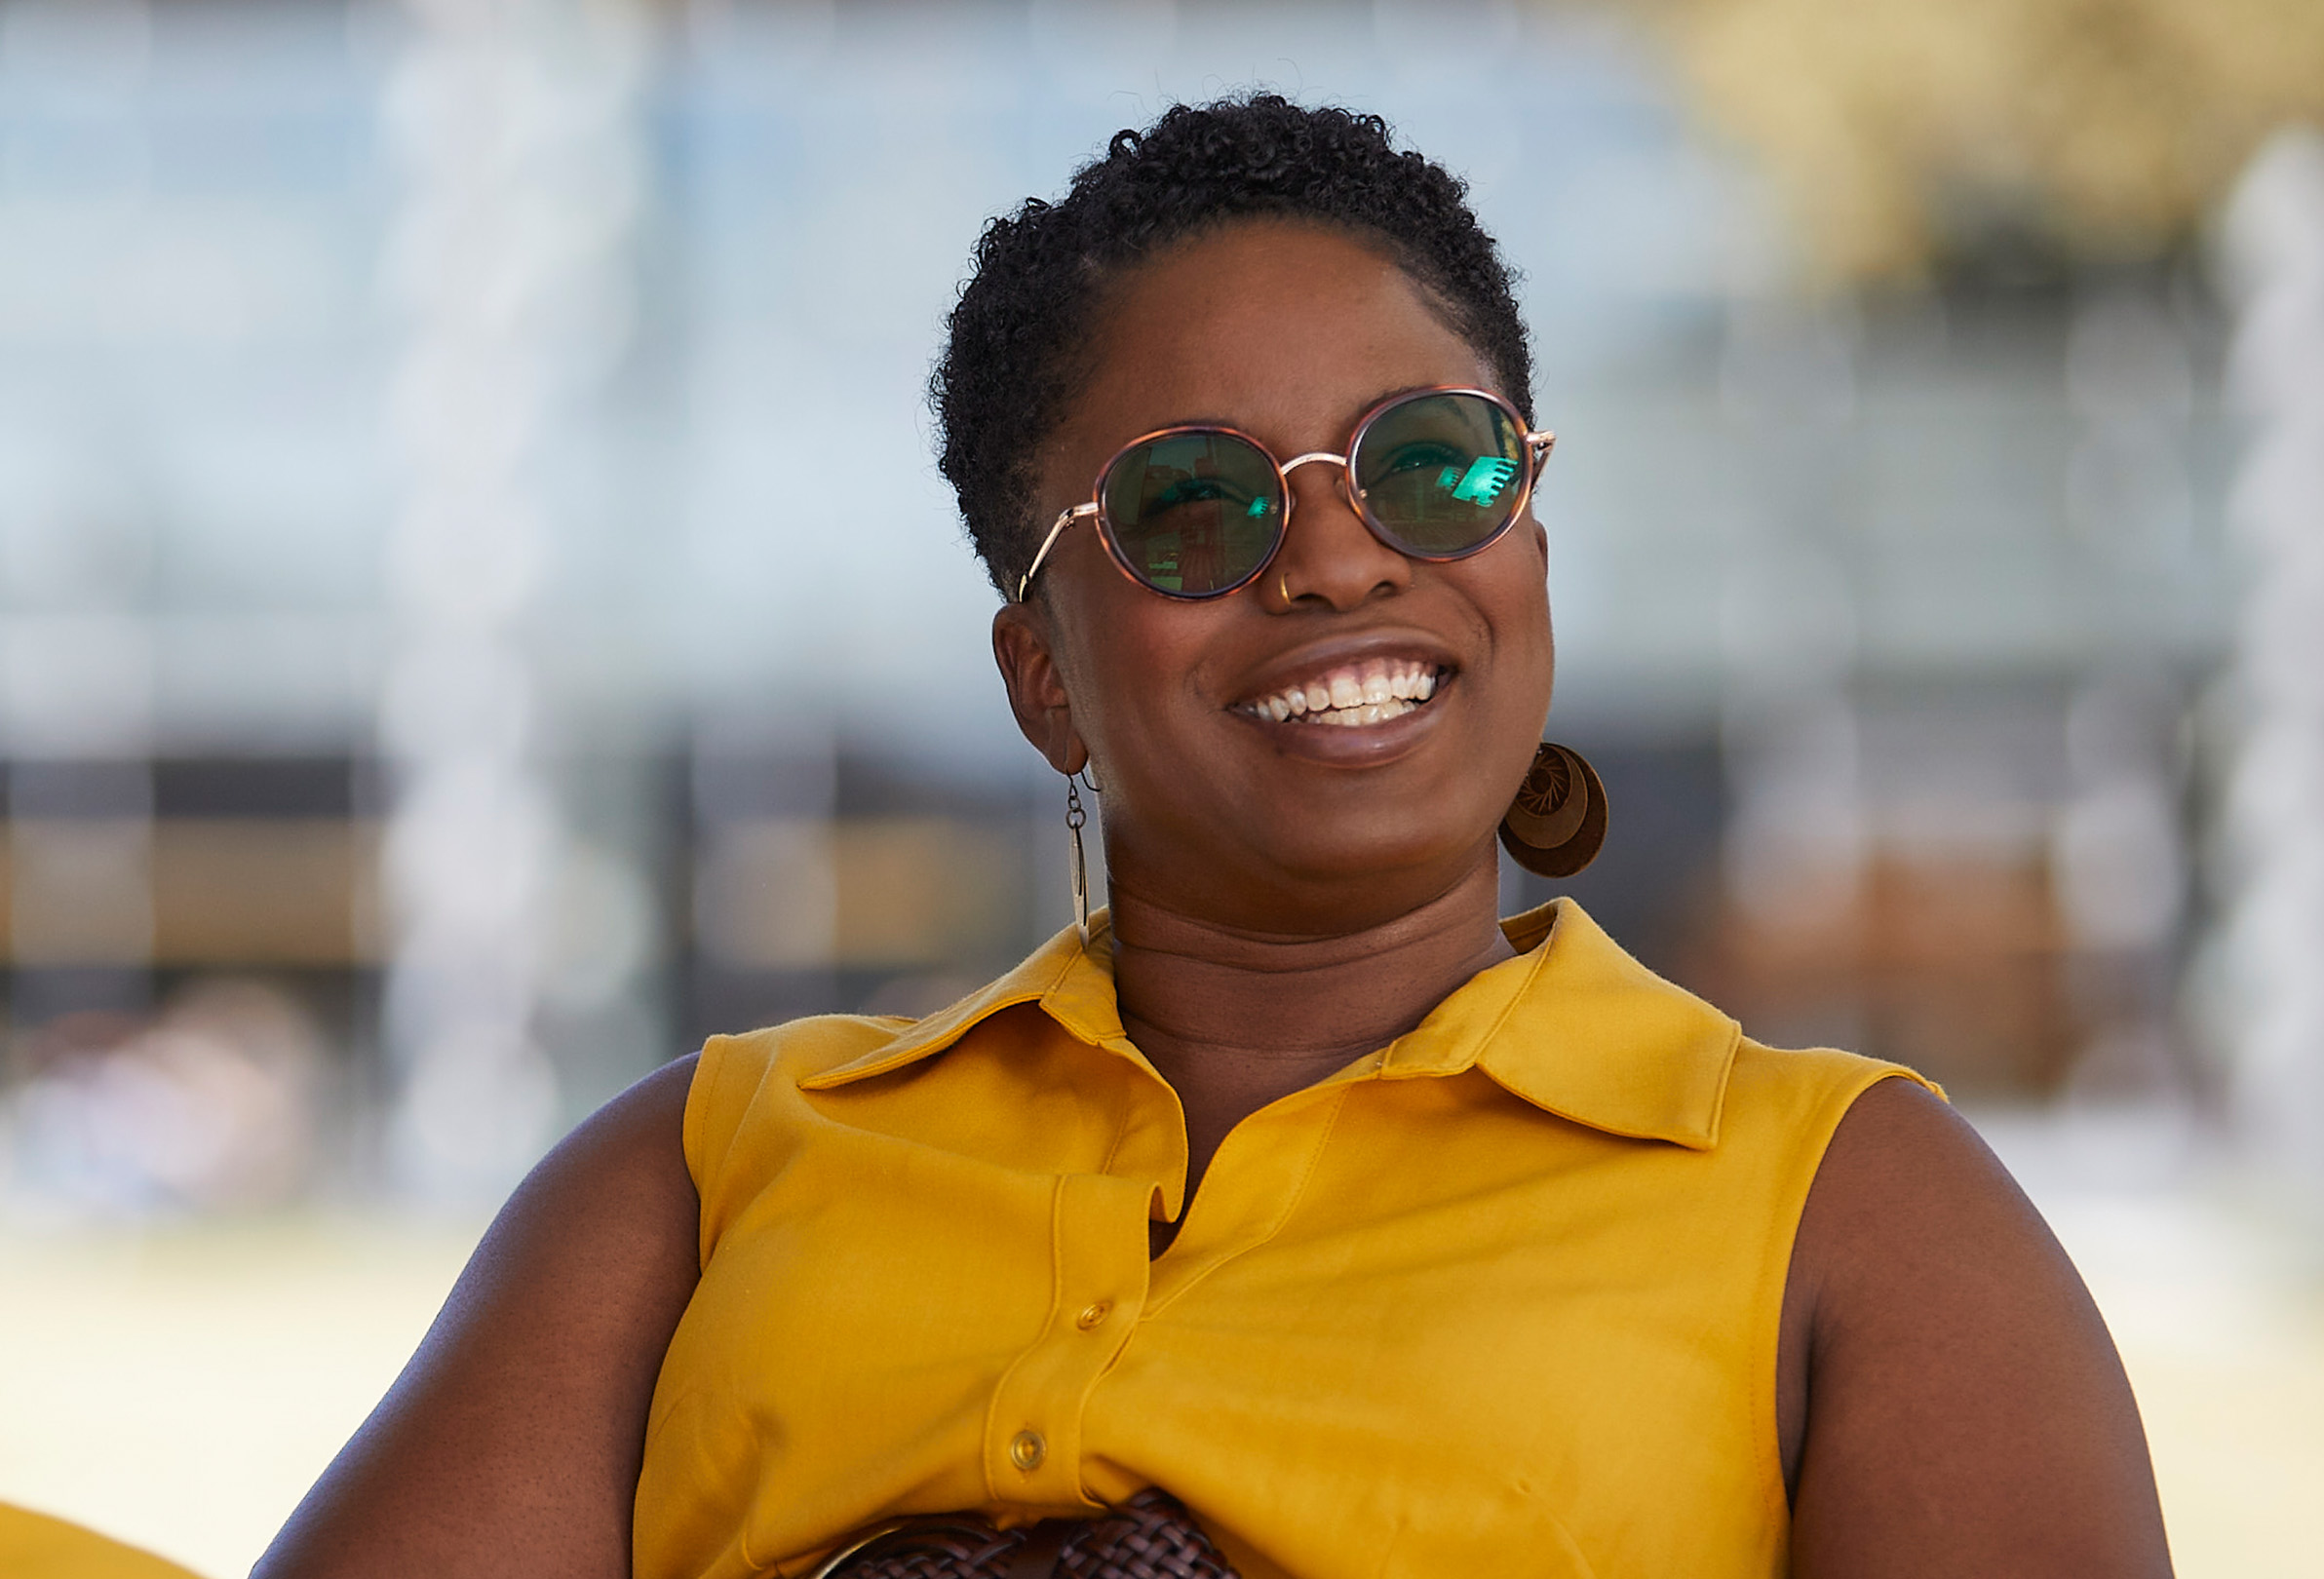 Una empleada de Apple sonríe y está sentada en el exterior con lentes de sol puestos.